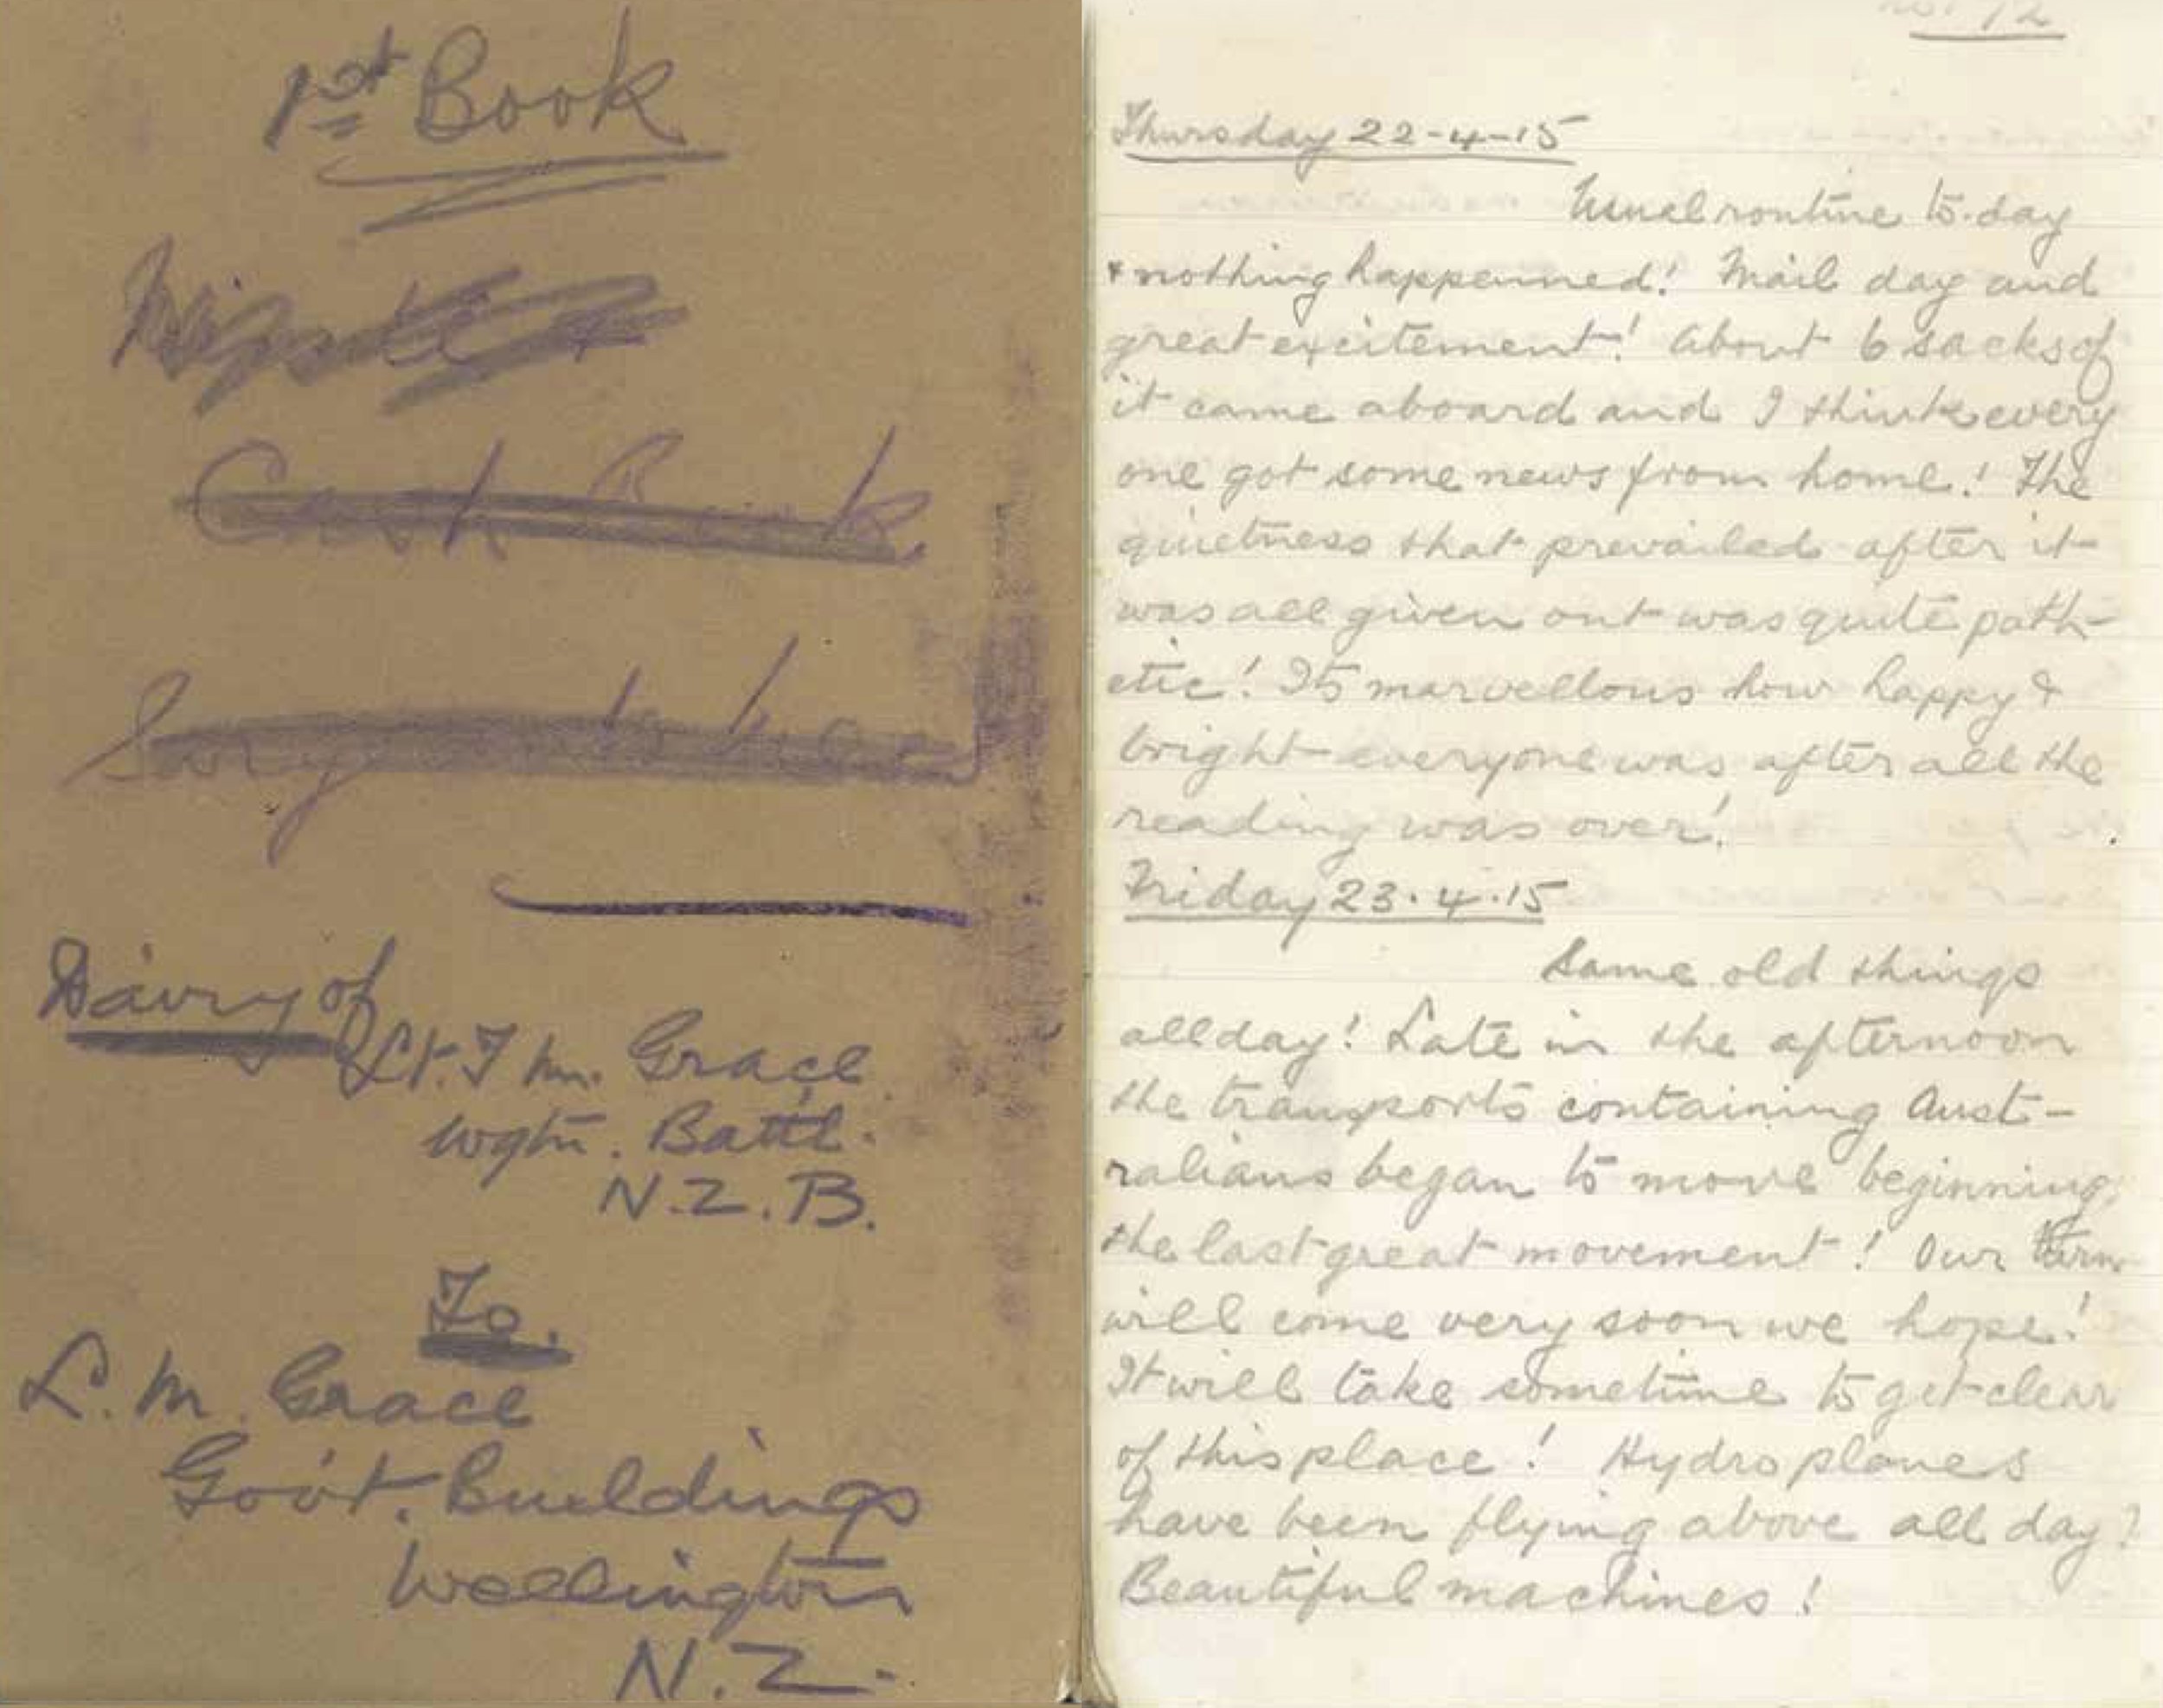 Hami's diary entry 23-25 April 1915